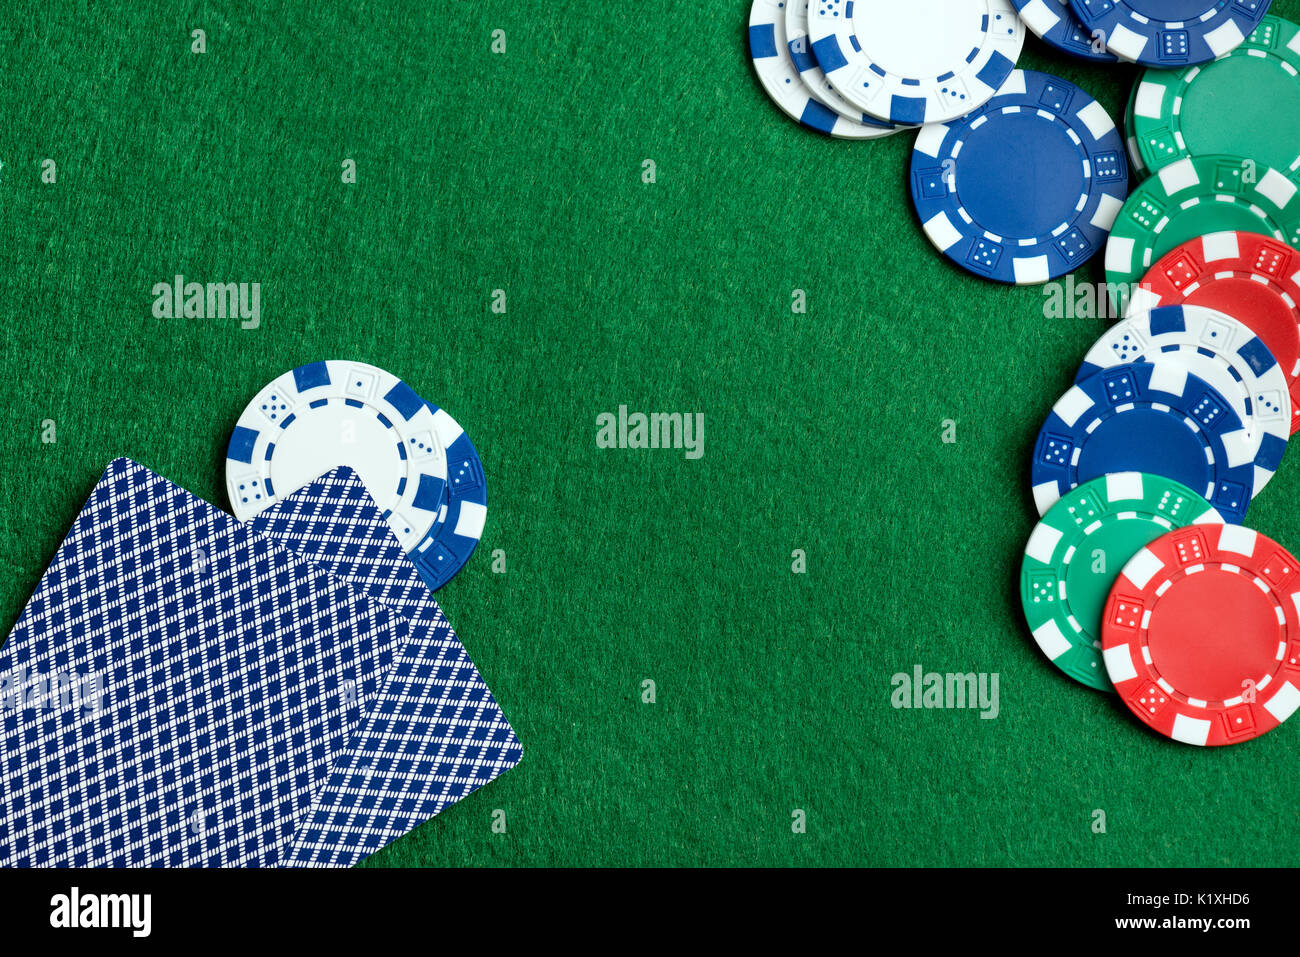 Casino grünen Tisch mit Chips und Karten spielen. Poker spiel Konzept Stockfoto